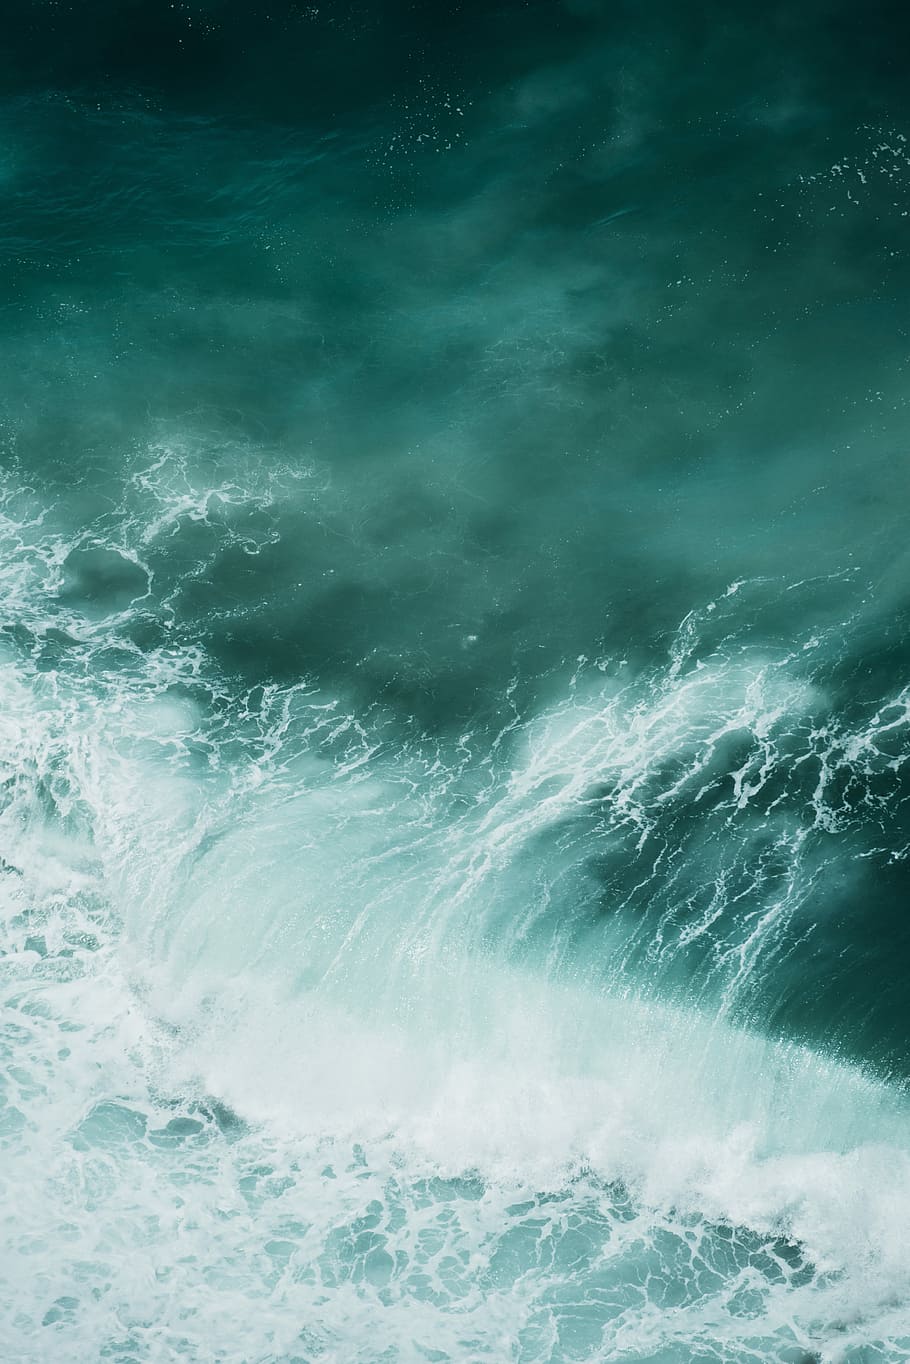 An ocean wave in the Sagres, seawaves painting, aerial, aerial view